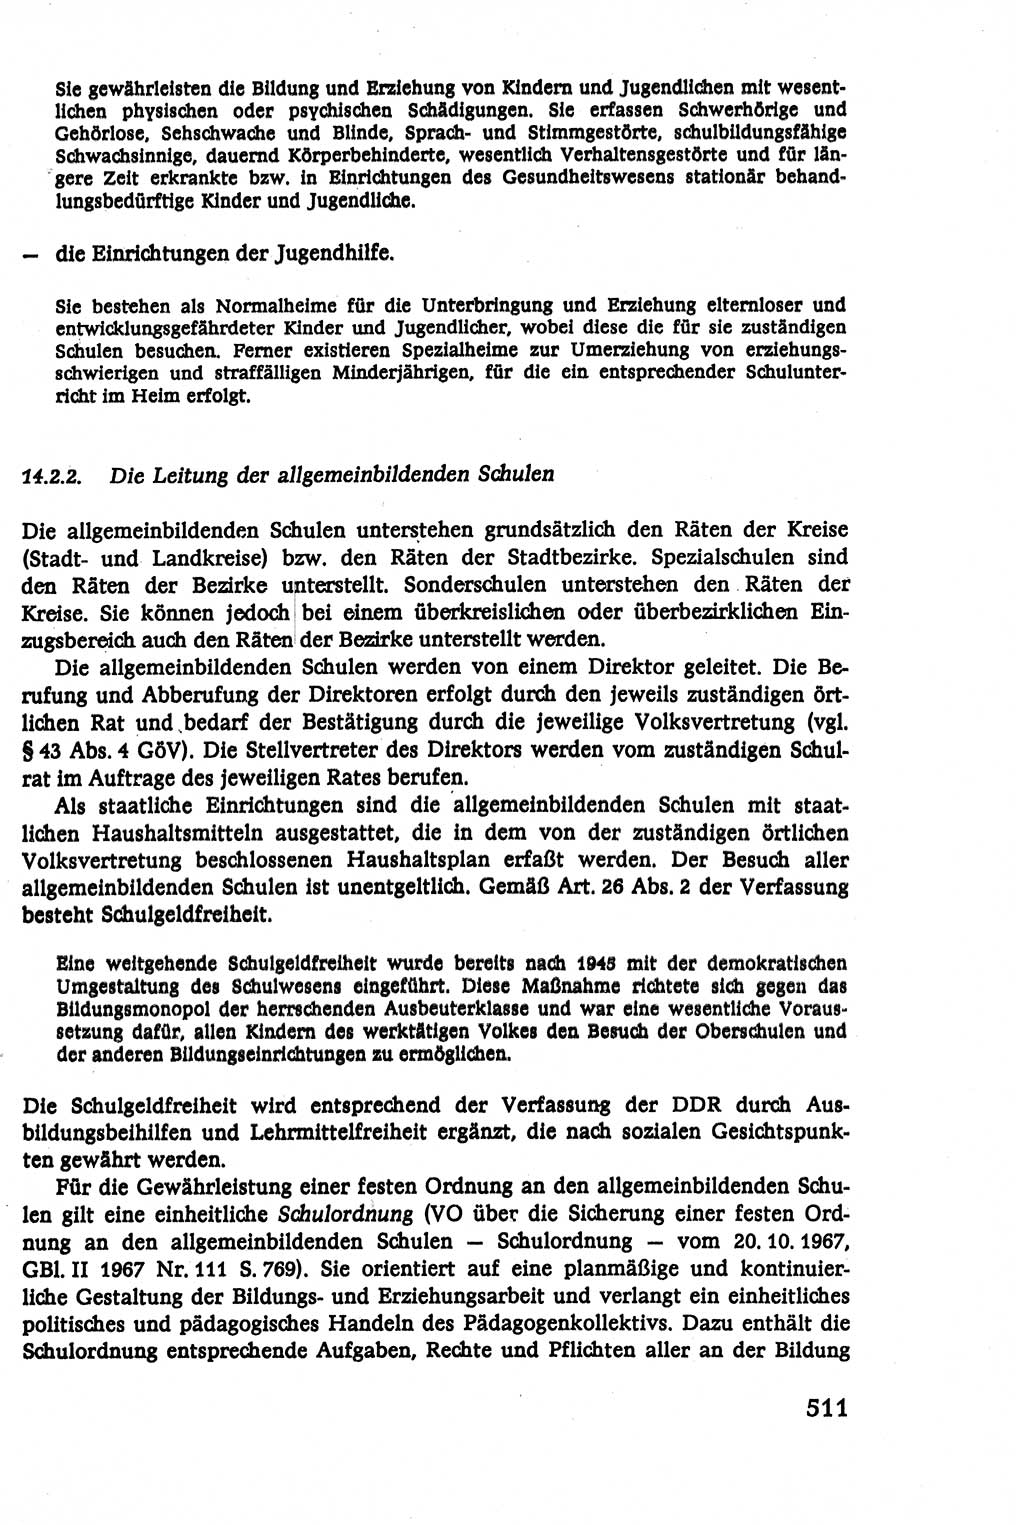 Verwaltungsrecht [Deutsche Demokratische Republik (DDR)], Lehrbuch 1979, Seite 511 (Verw.-R. DDR Lb. 1979, S. 511)